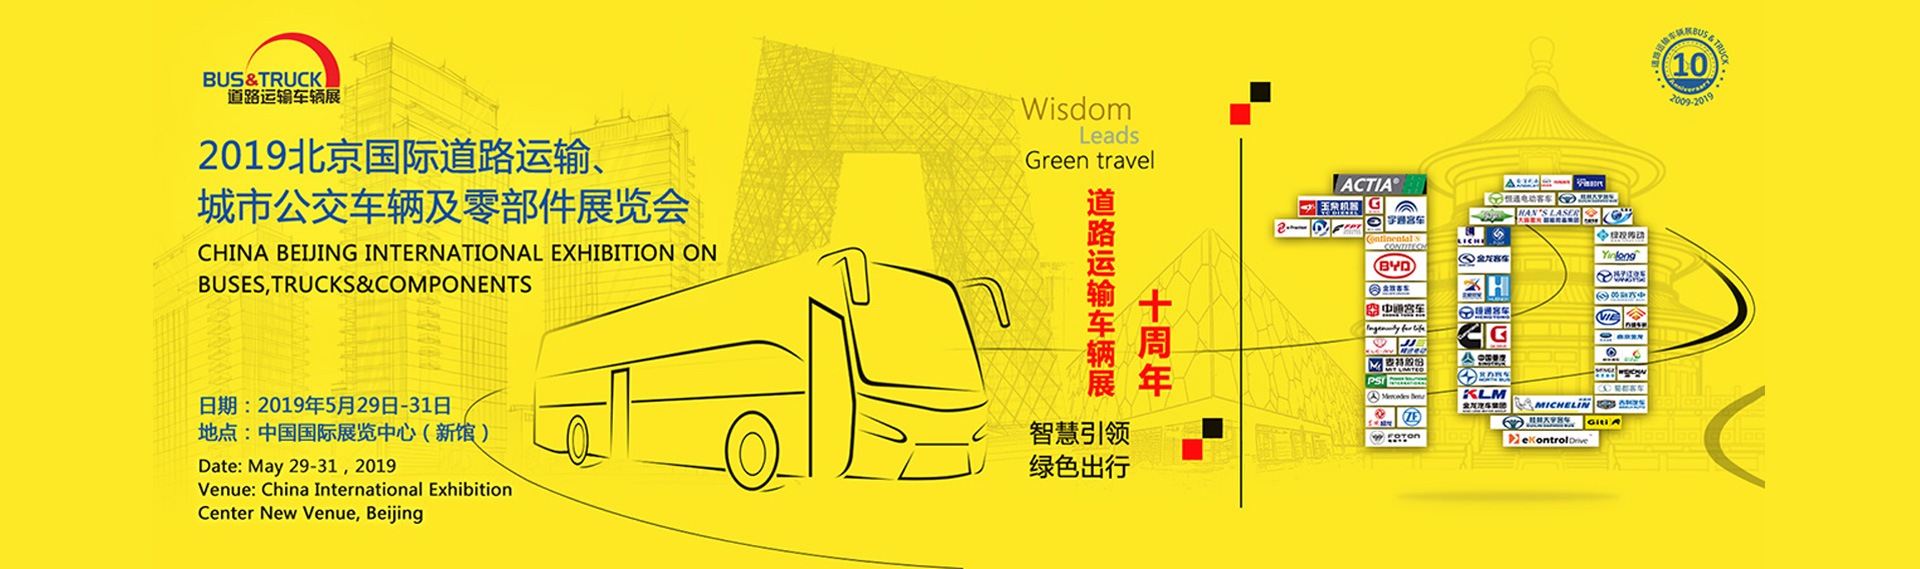 银隆客车展台 2019北京国际道路运输、城市公交车辆及零配件展览会